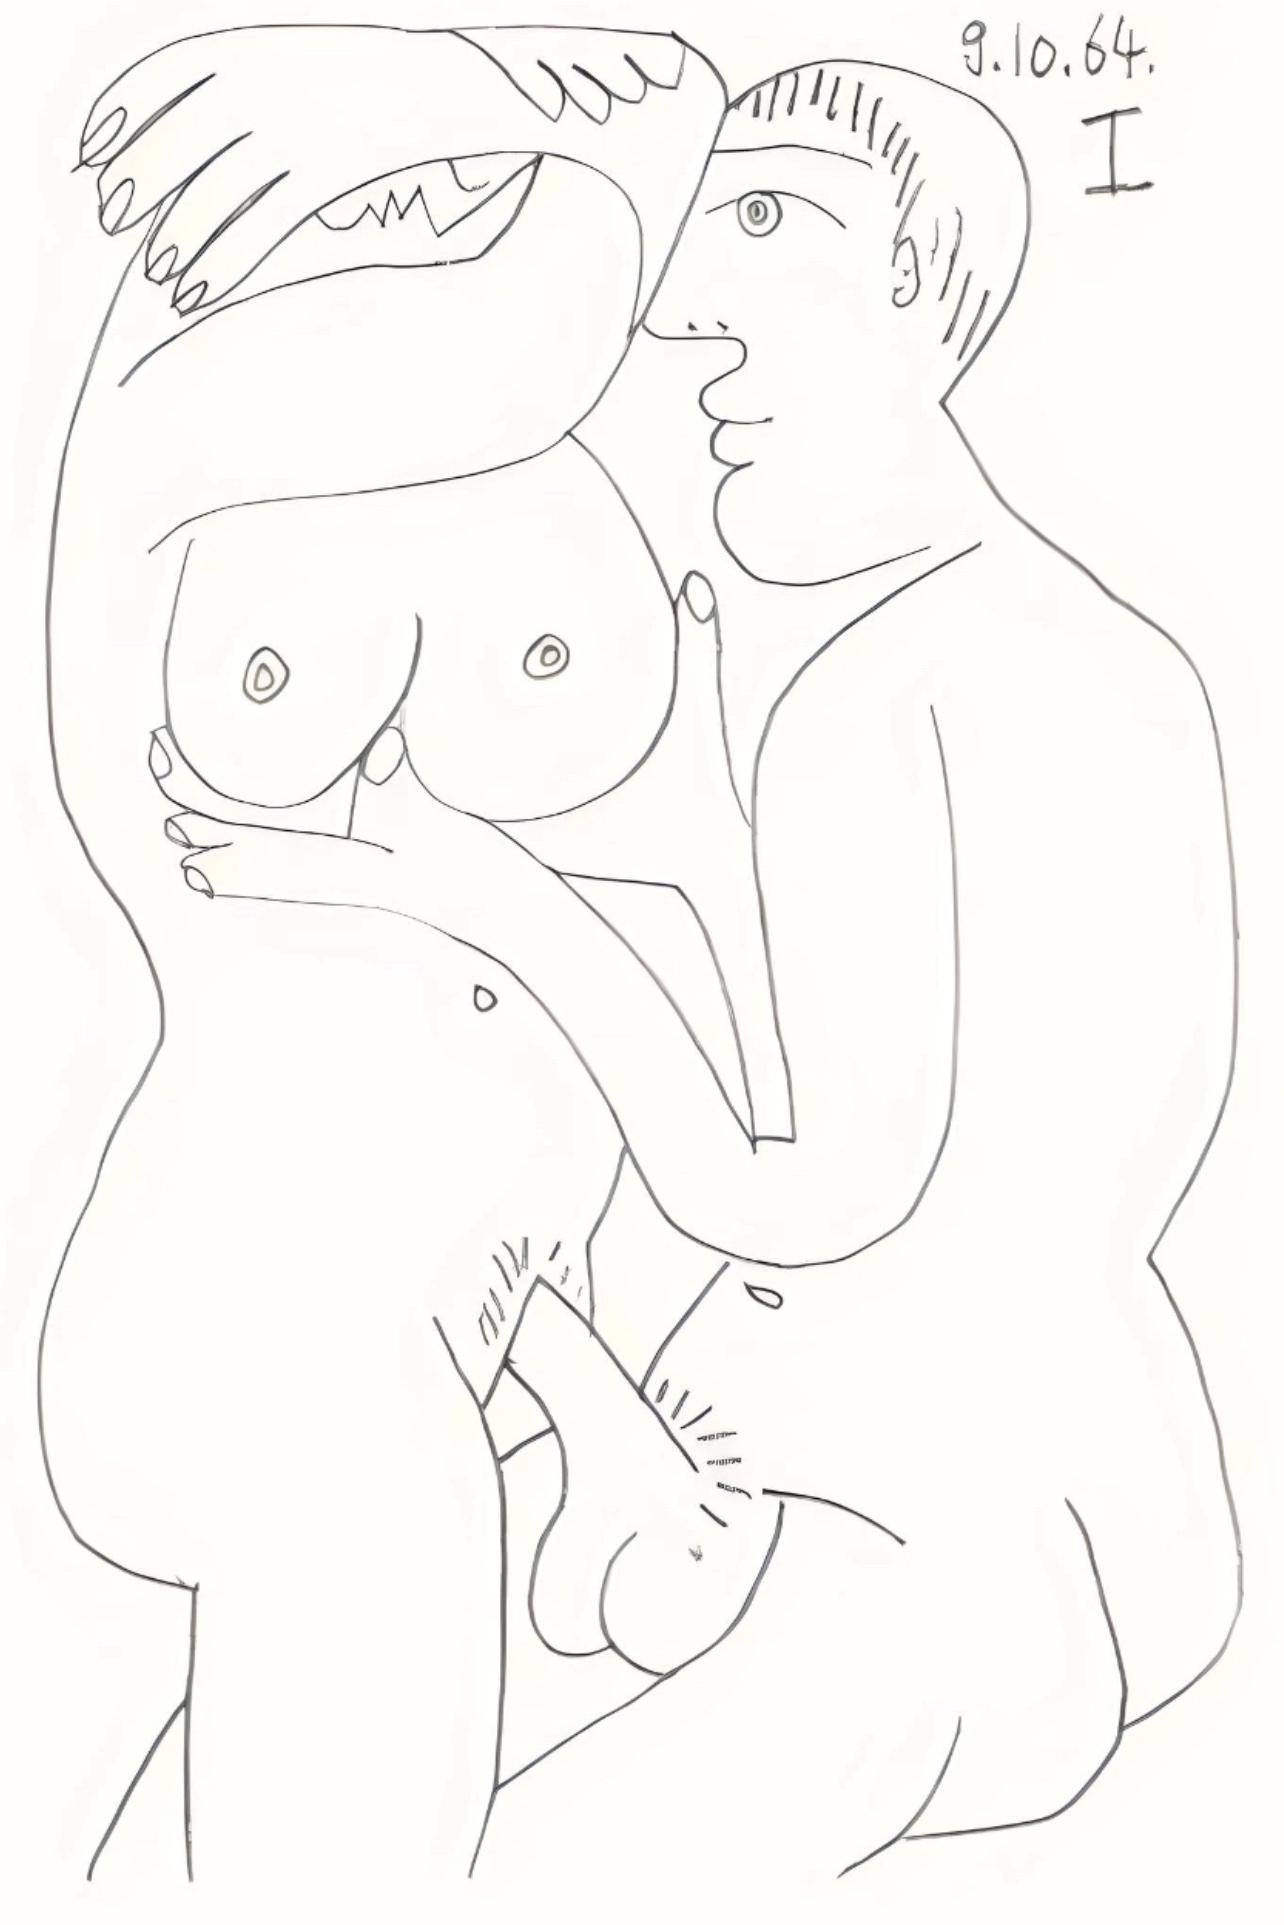 Picasso, Le Goût du Bonheur 68 (Cramer 148; Bloch 2013) (after) - Print by Pablo Picasso